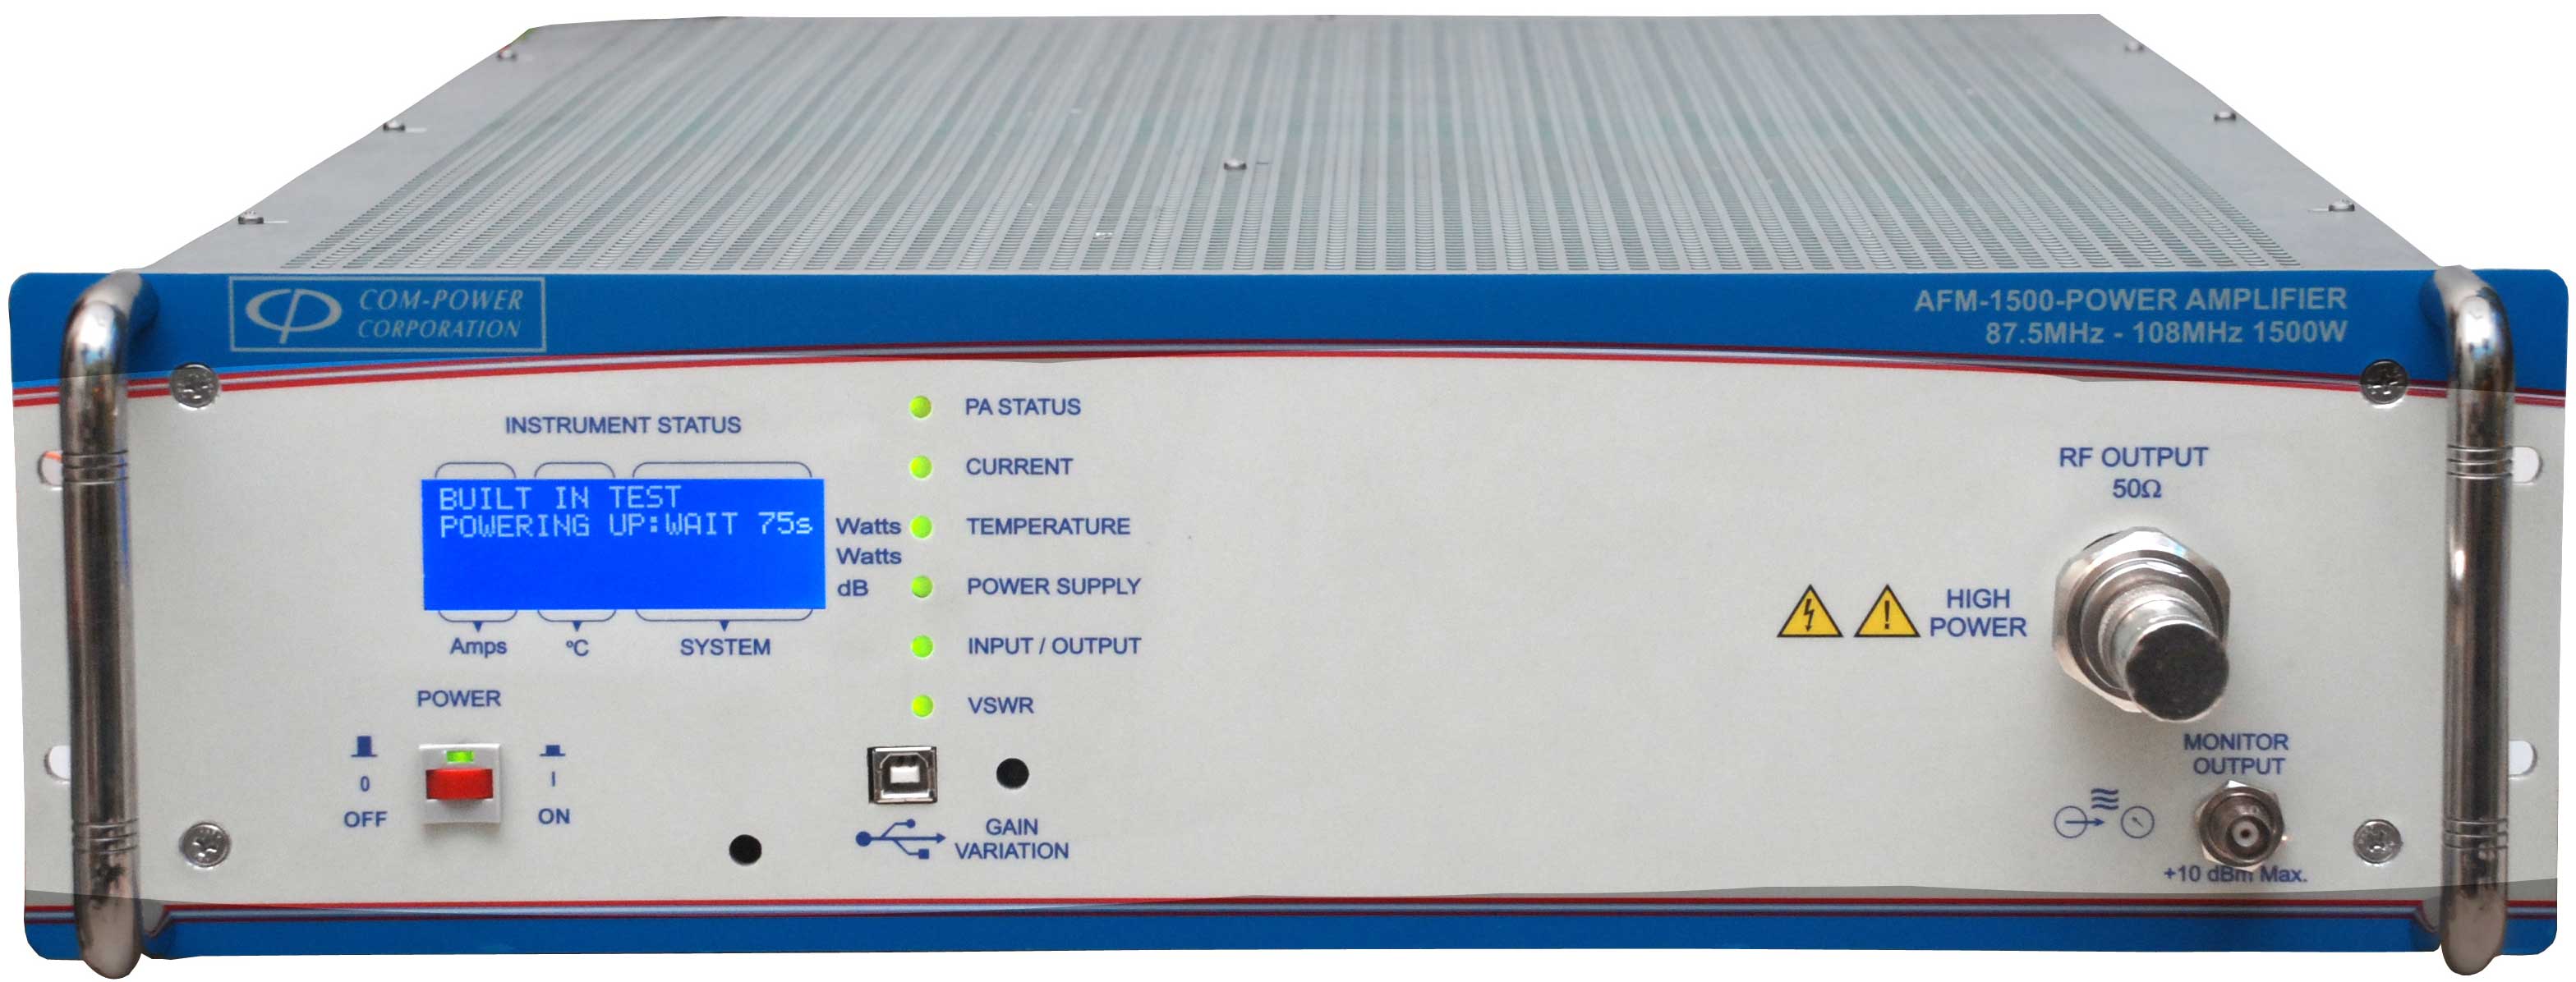 AFM-1500 - Com-Power Power Amplifiers